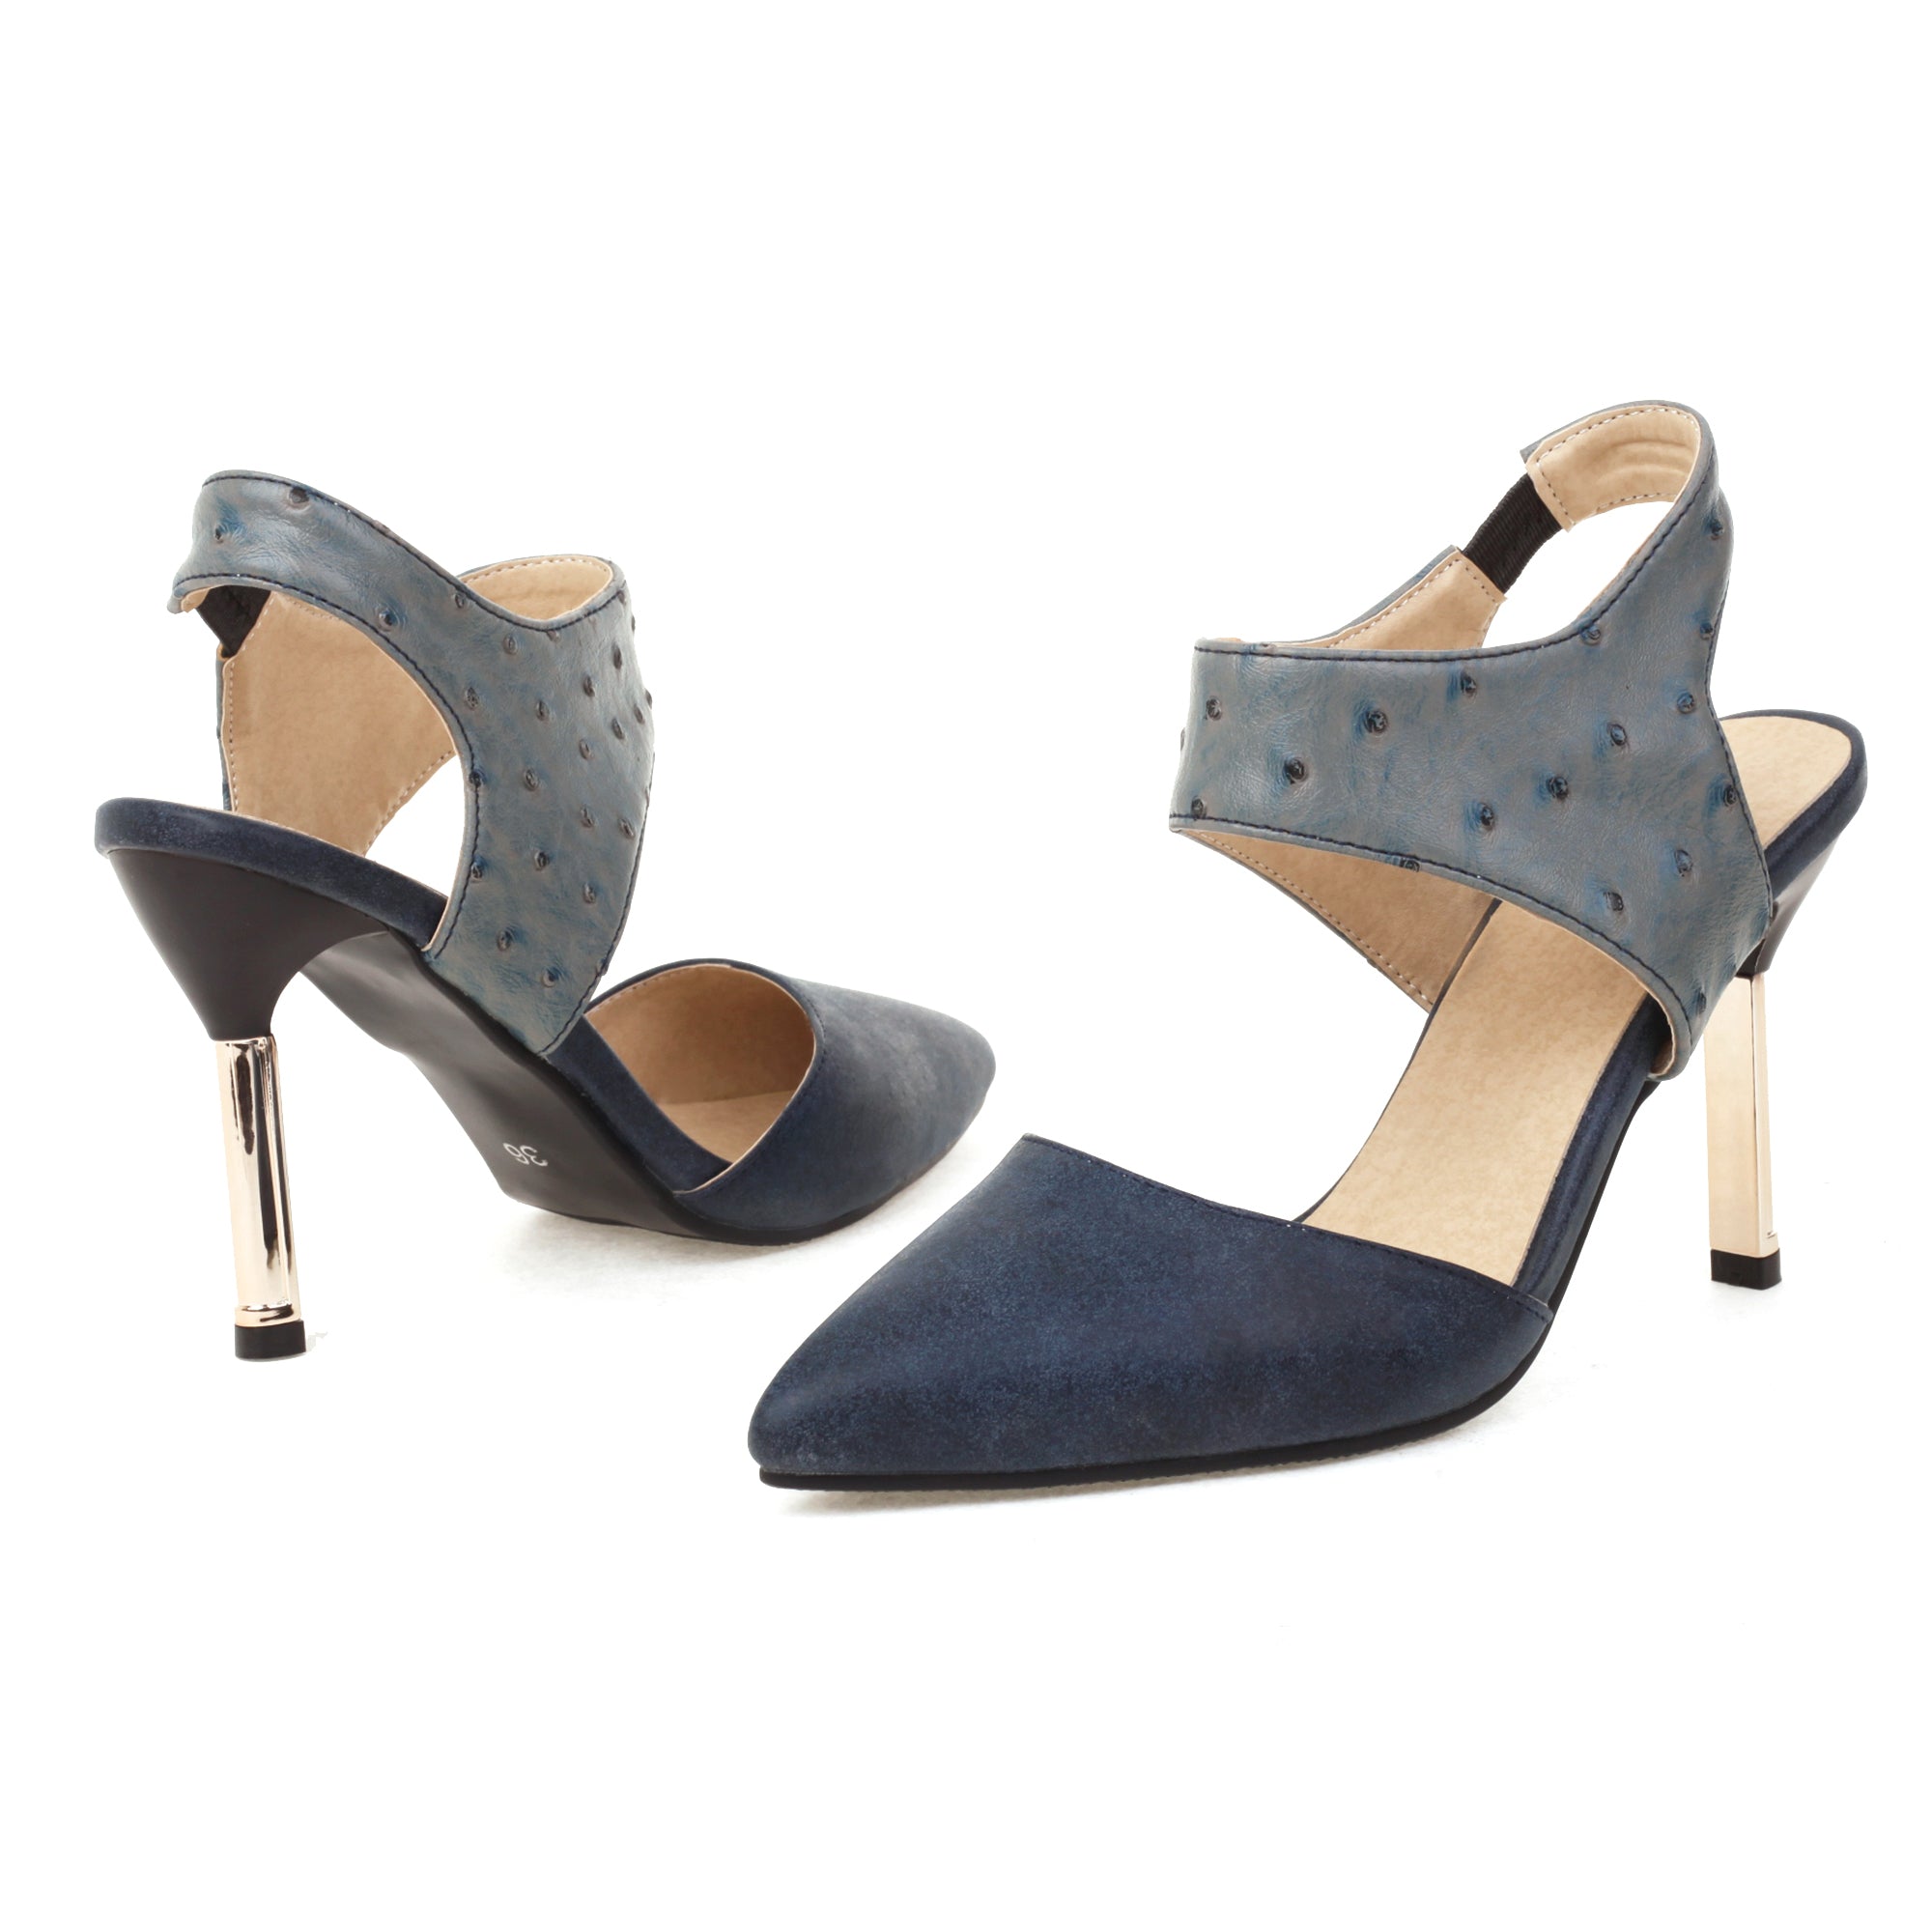 Bigsizeheels Slingback Peep Toe Stiletto Heel Sandals - Blue best oversized womens heels are from bigsizeheel®